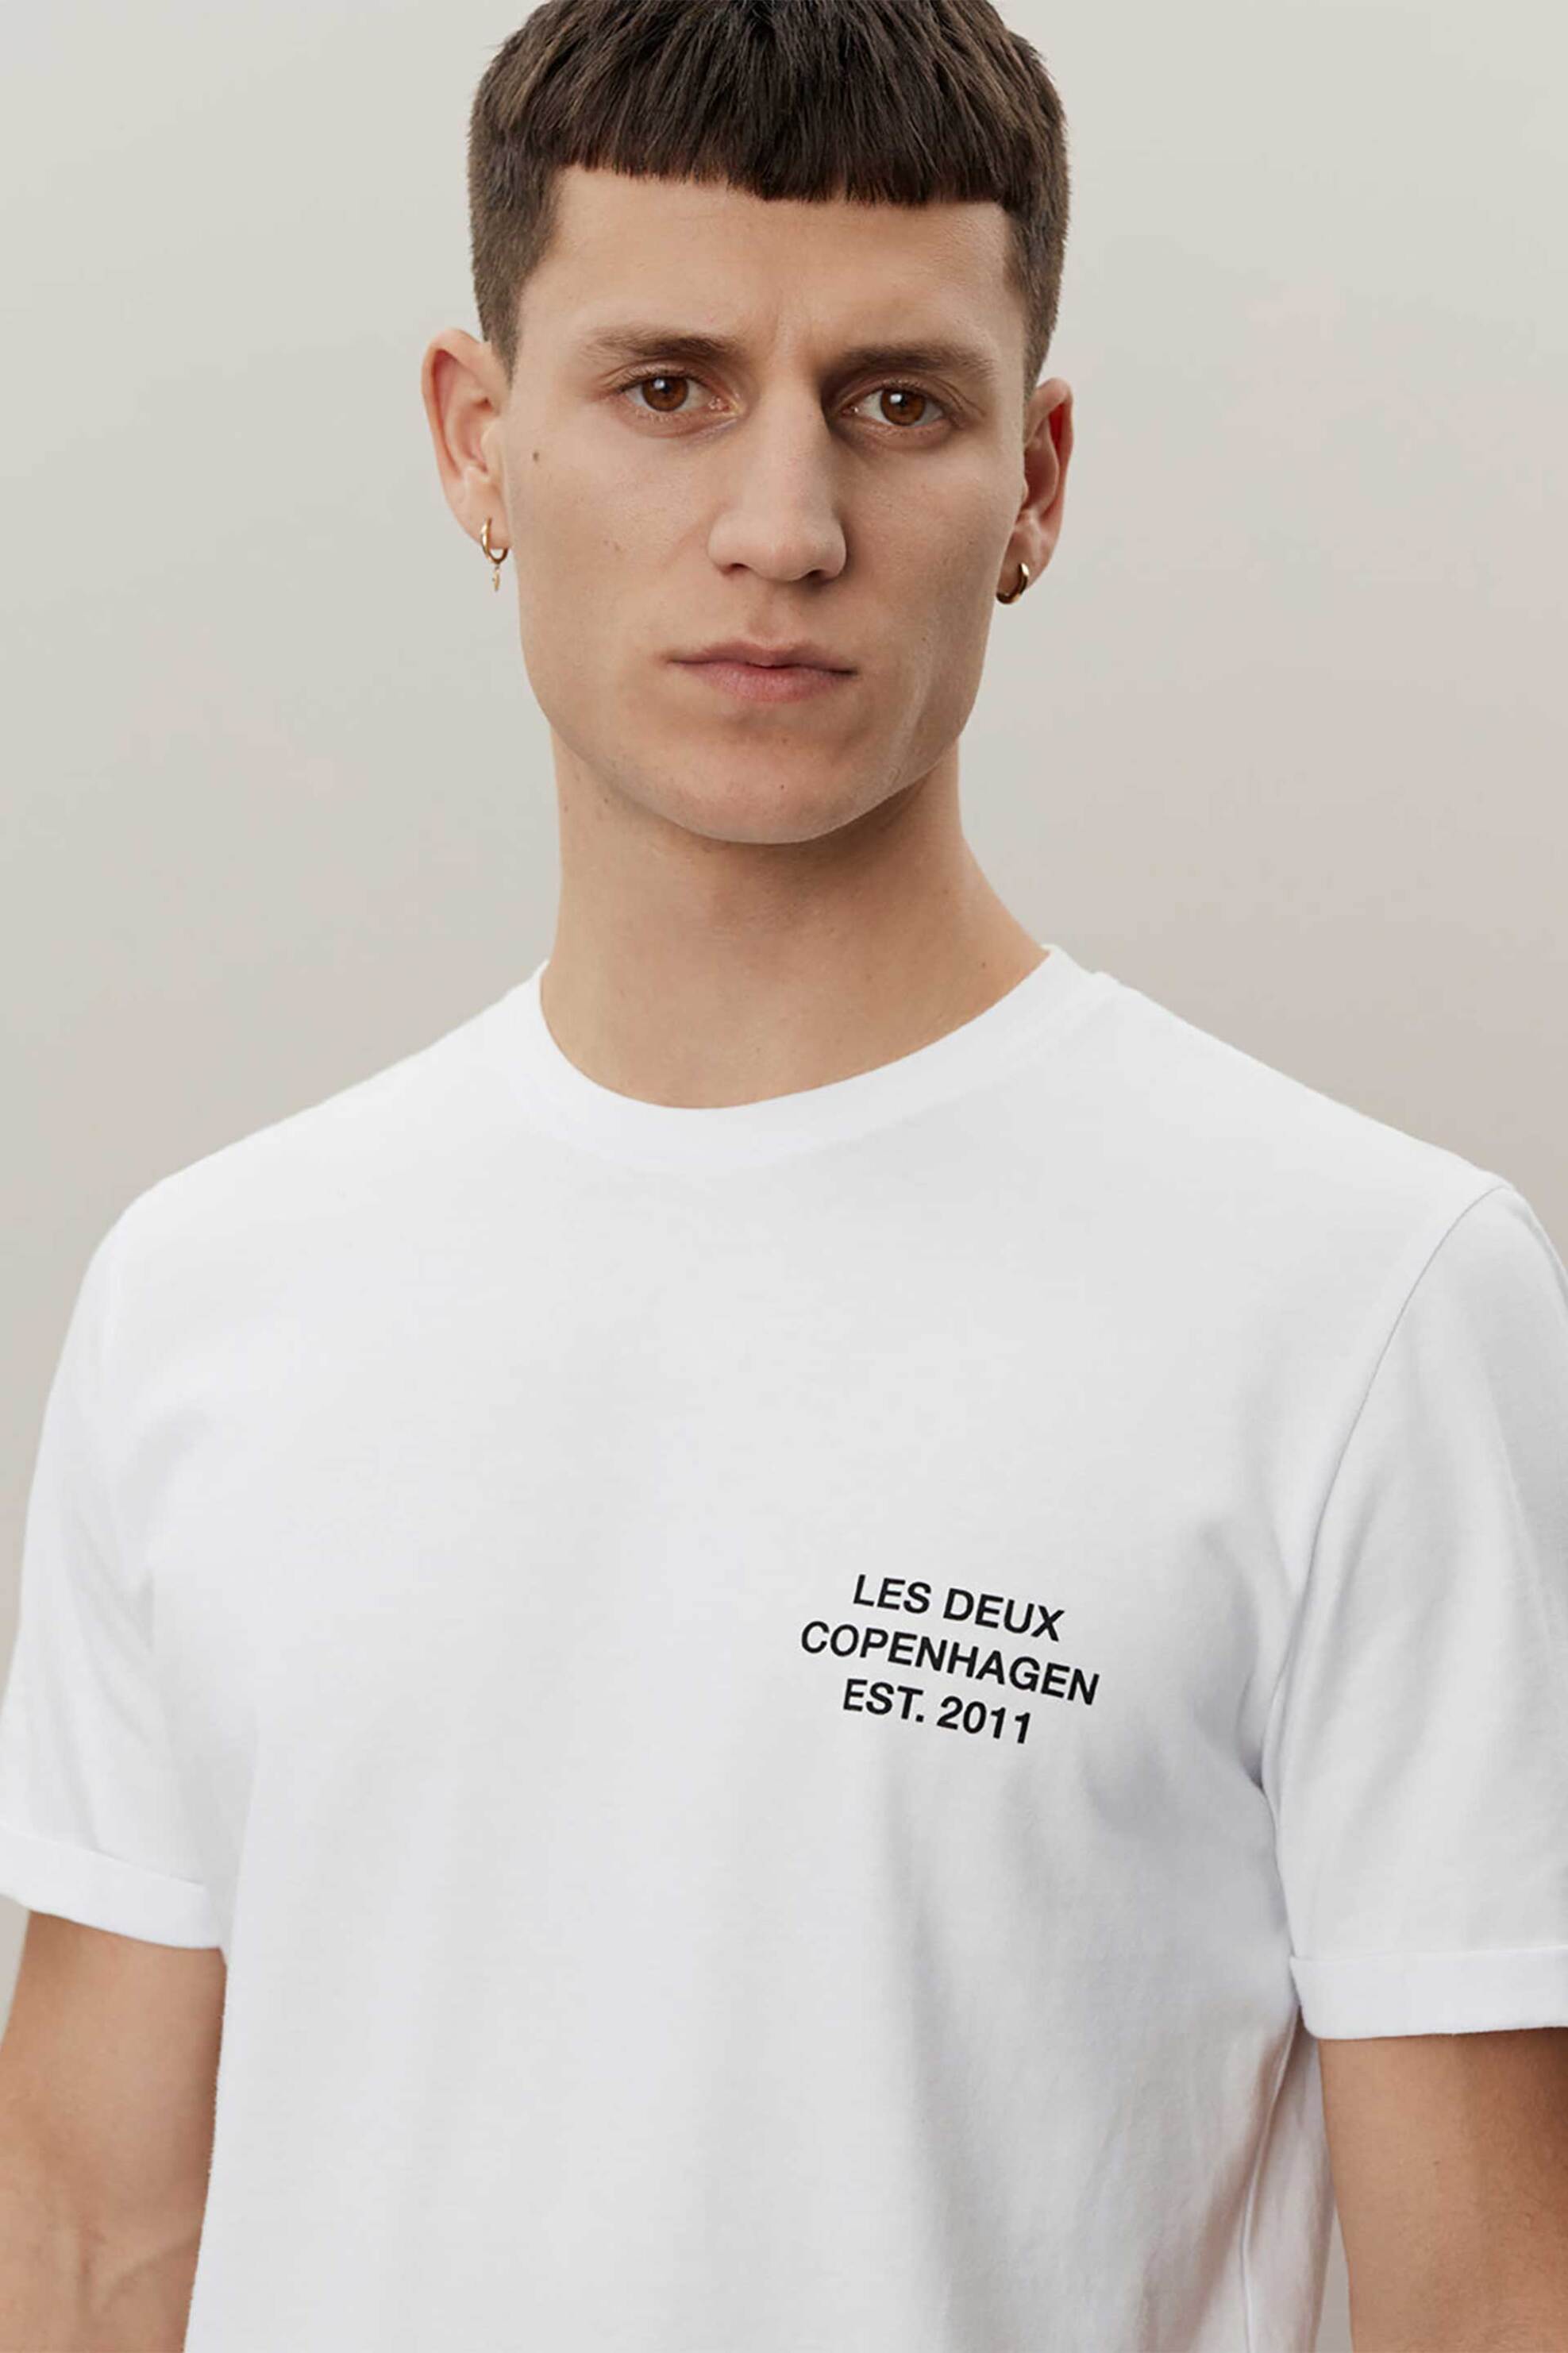 Ανδρική Μόδα > Ανδρικά Ρούχα > Ανδρικές Μπλούζες > Ανδρικά T-Shirts Les Deux ανδρικό T-shirt Slim Fit "Copenhagen 2011" - LDM101165 Λευκό